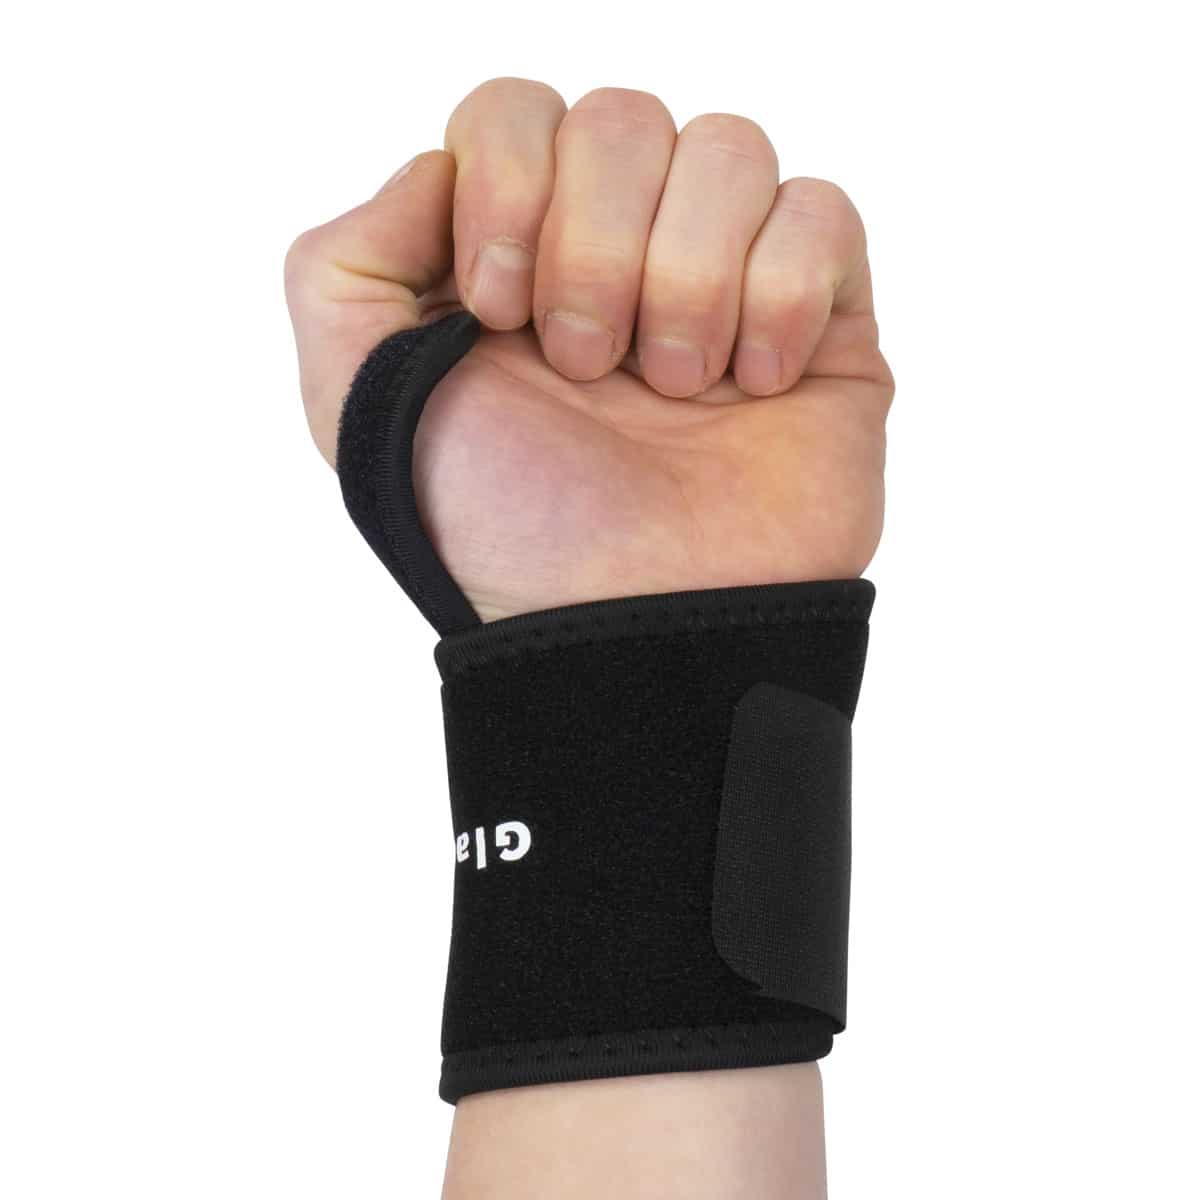 Protectores De Pulso Em Neoprene "hand Grips" Para Desportistas (conjunto De 2)